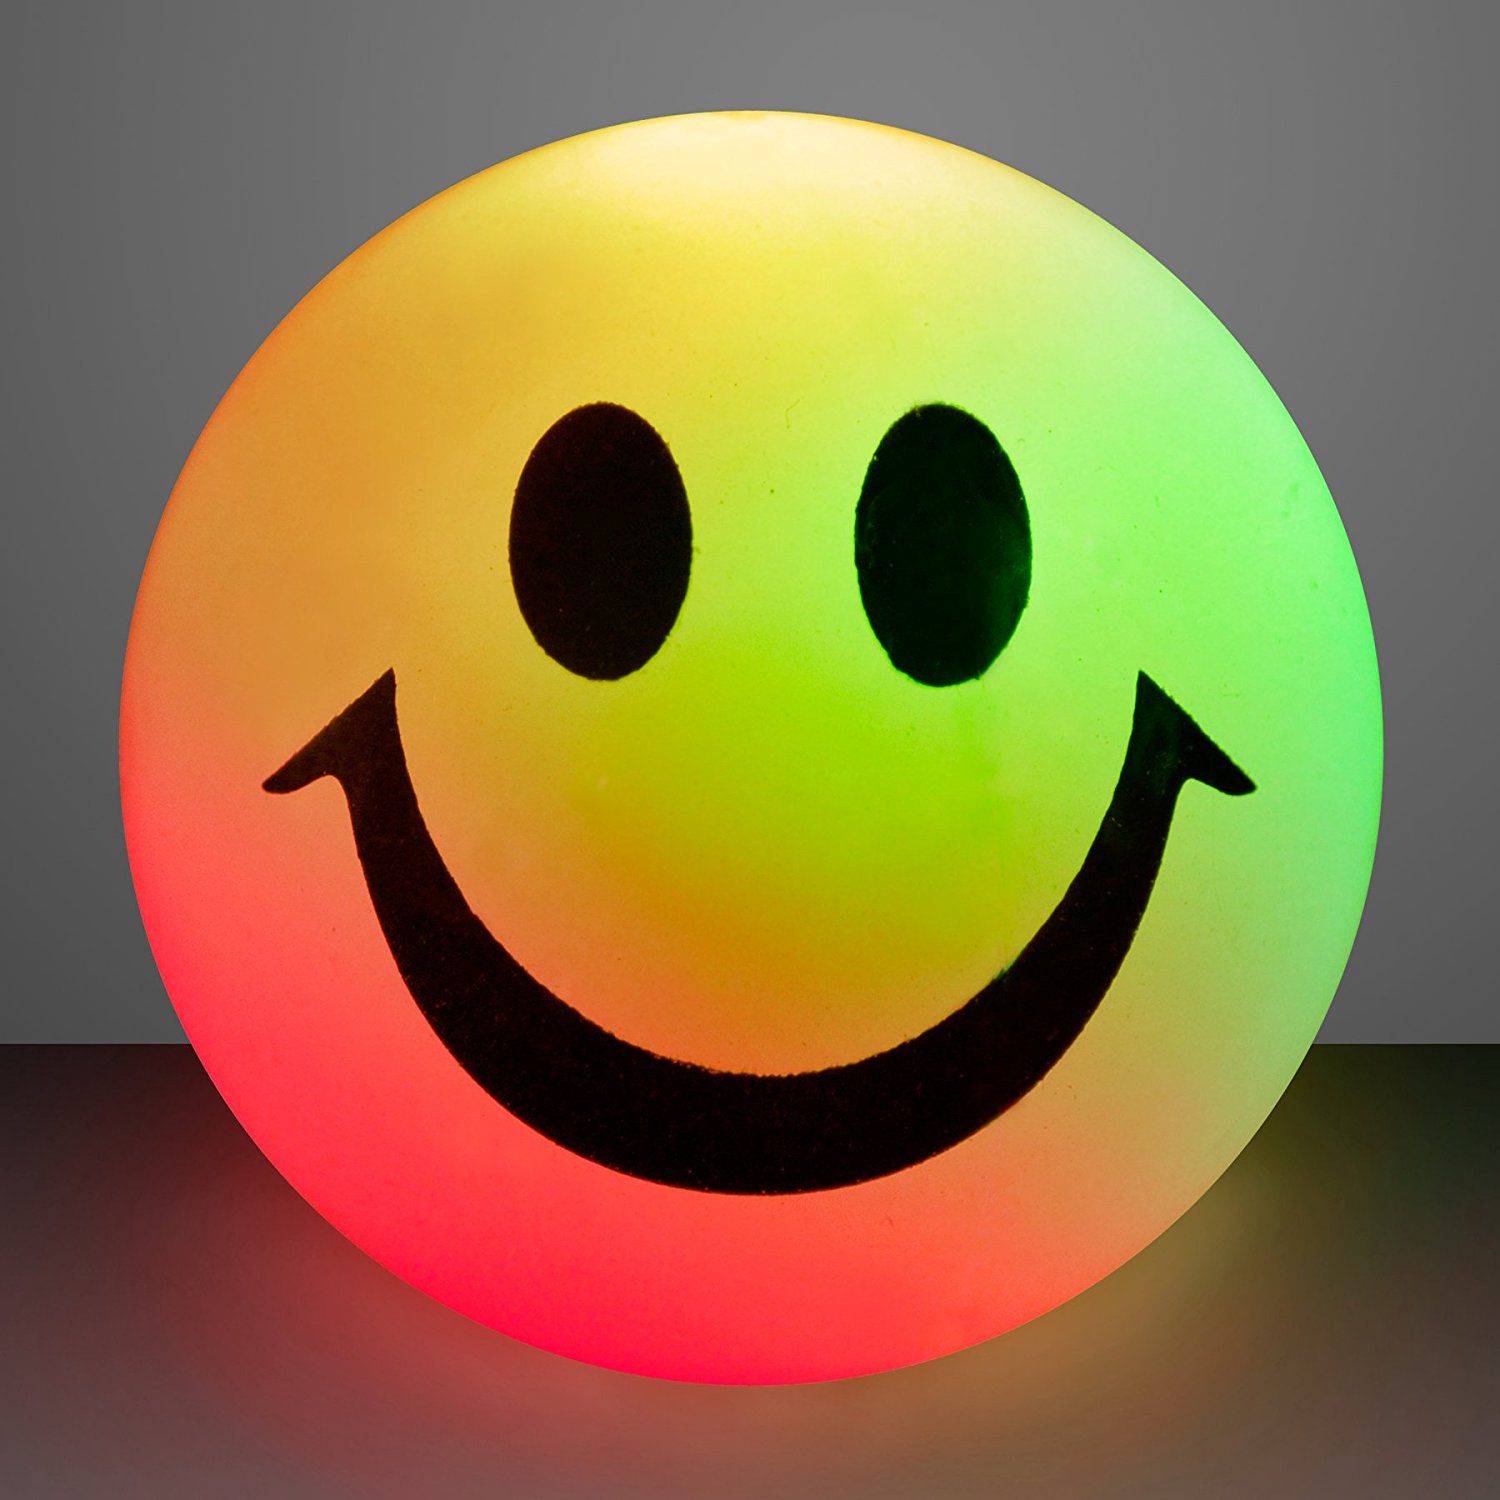 Amazon.com: Emoji Smiley Face Light Up Balls with Flashing LED ...